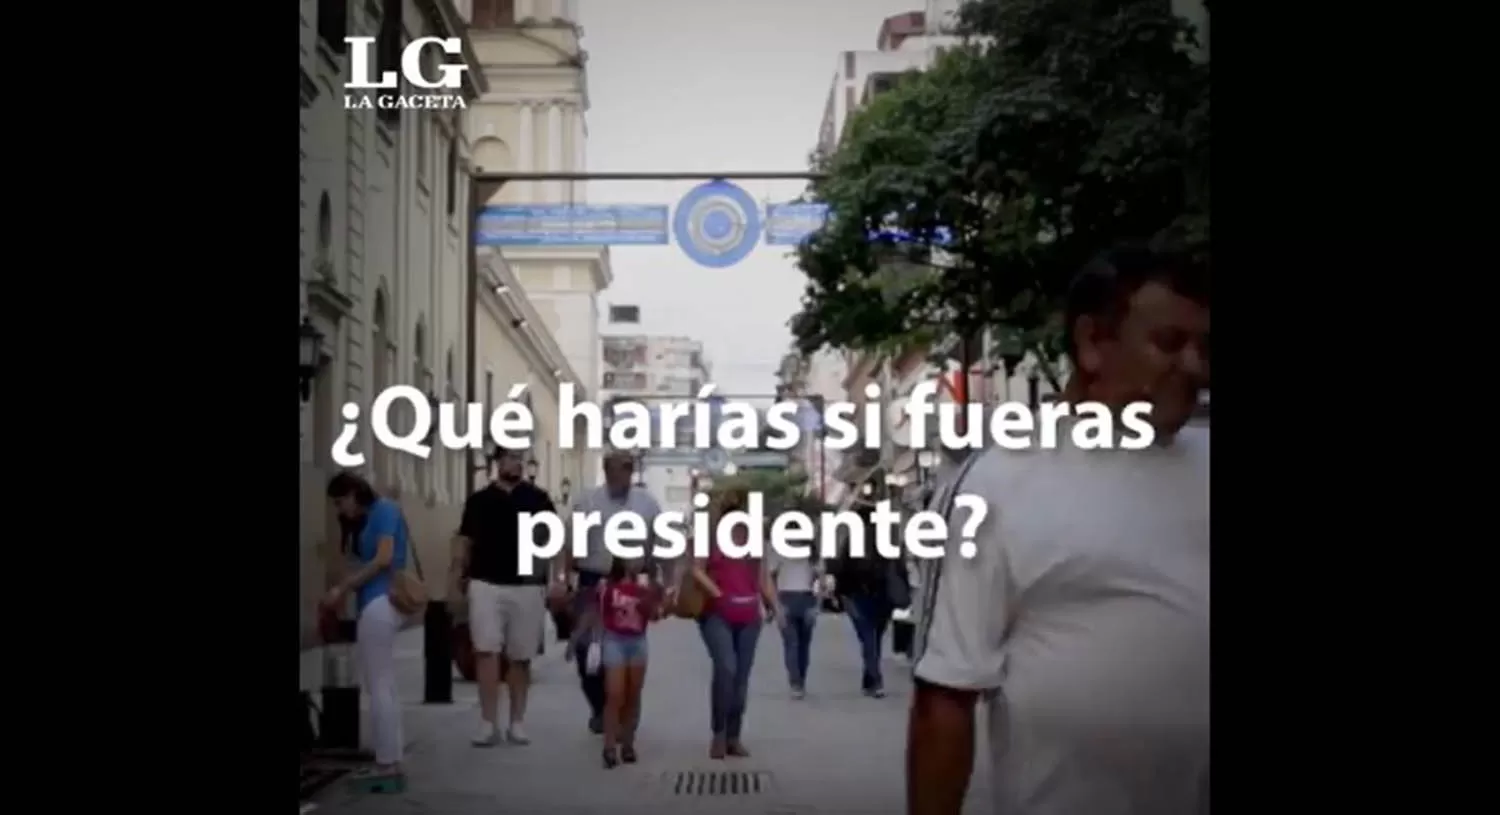 ¿Qué harías si fueras presidente? Esto respondieron jóvenes tucumanos